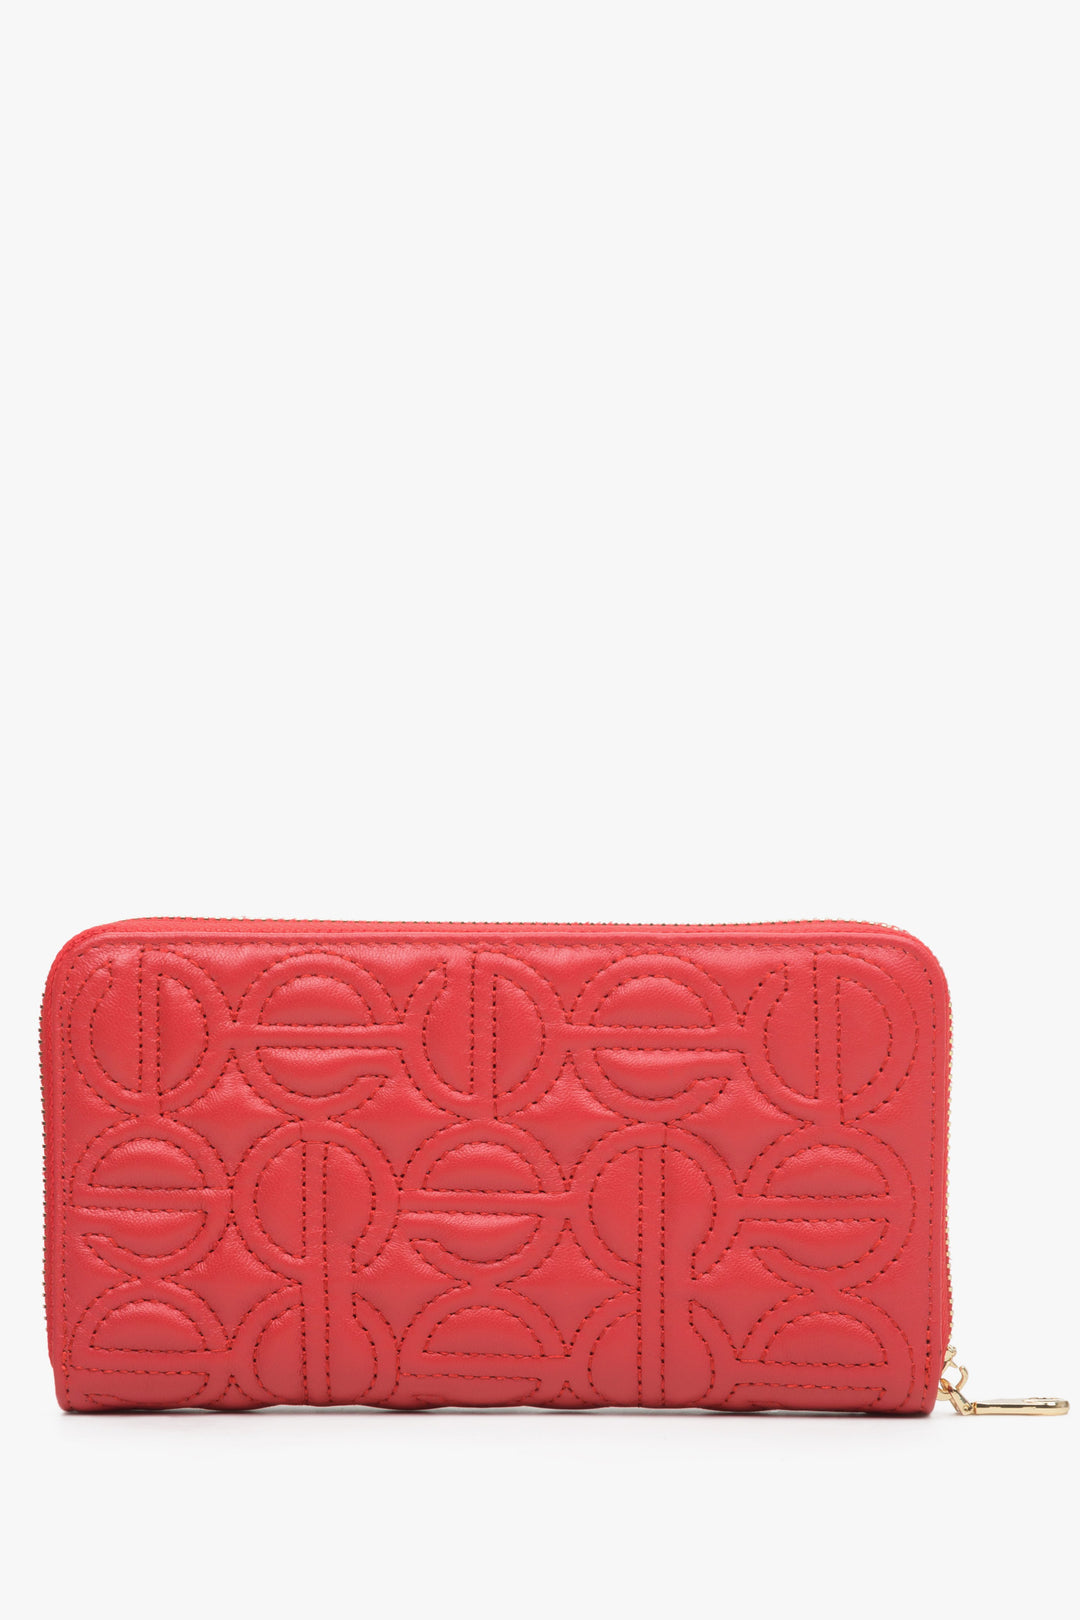 Czerwony, skórzany portfel damski z tłoczonym logo marki Estro.